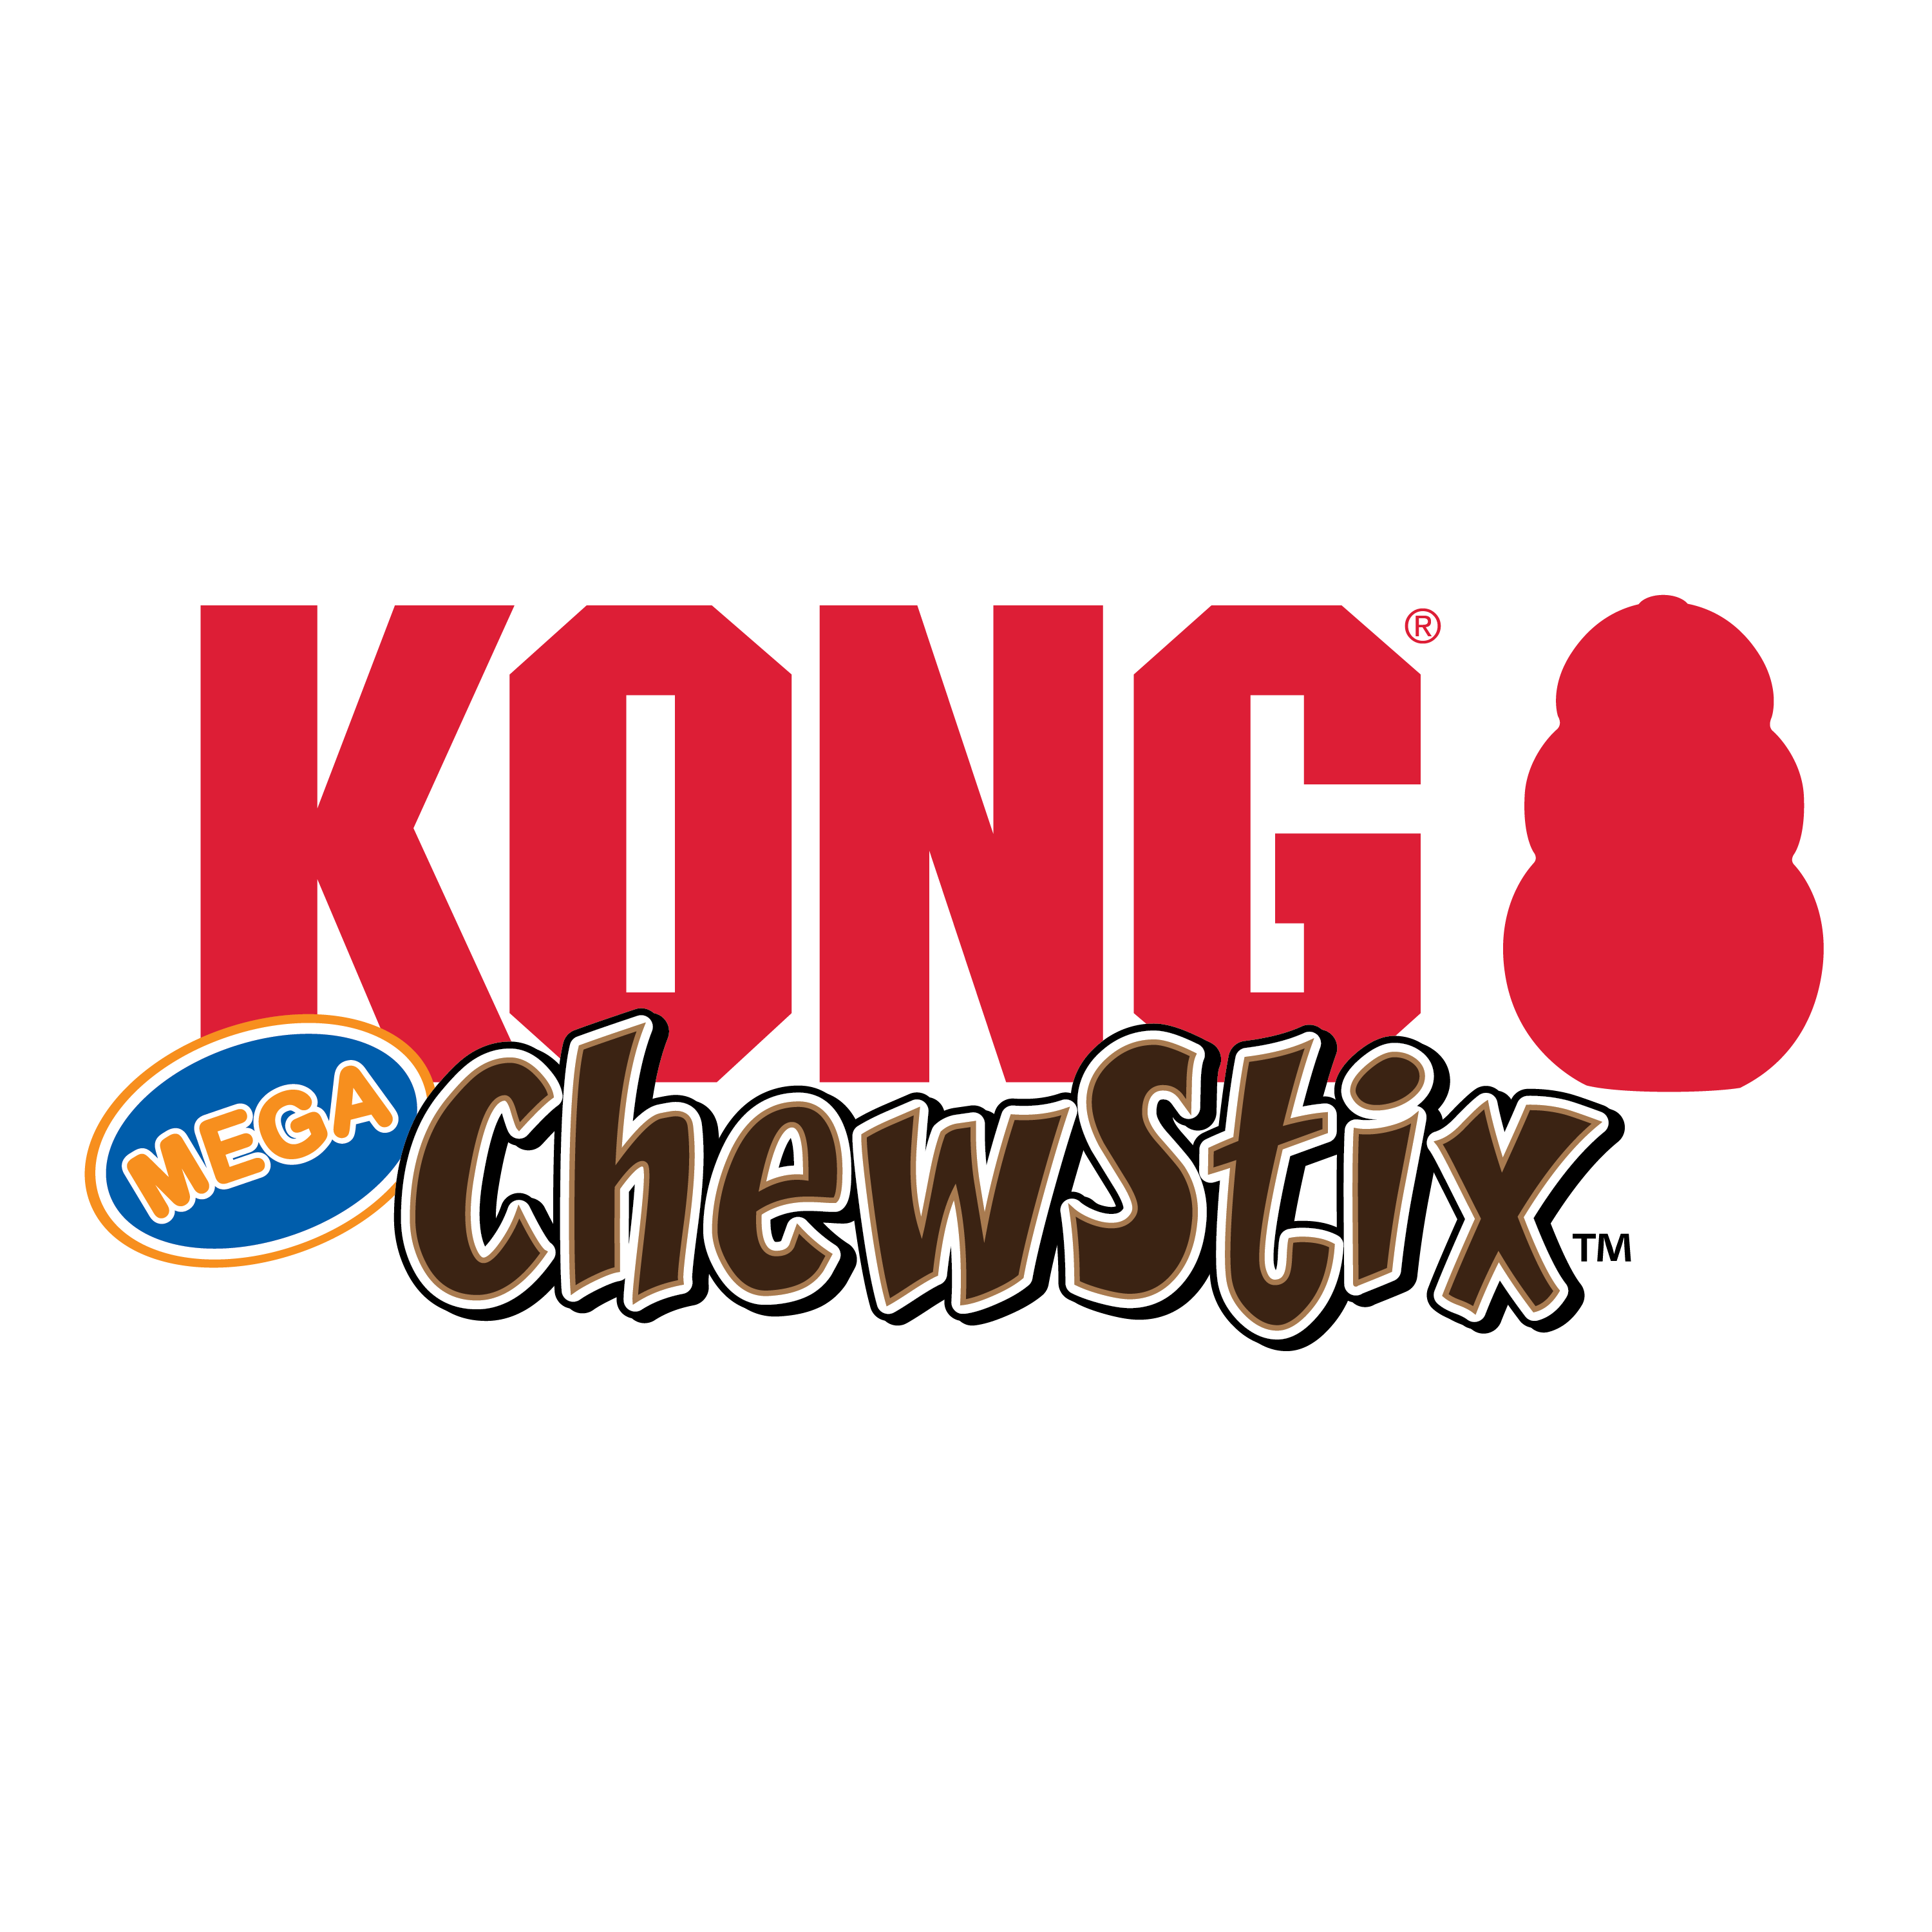 ChewStix Tough Mega Stick alt1 imagen de producto